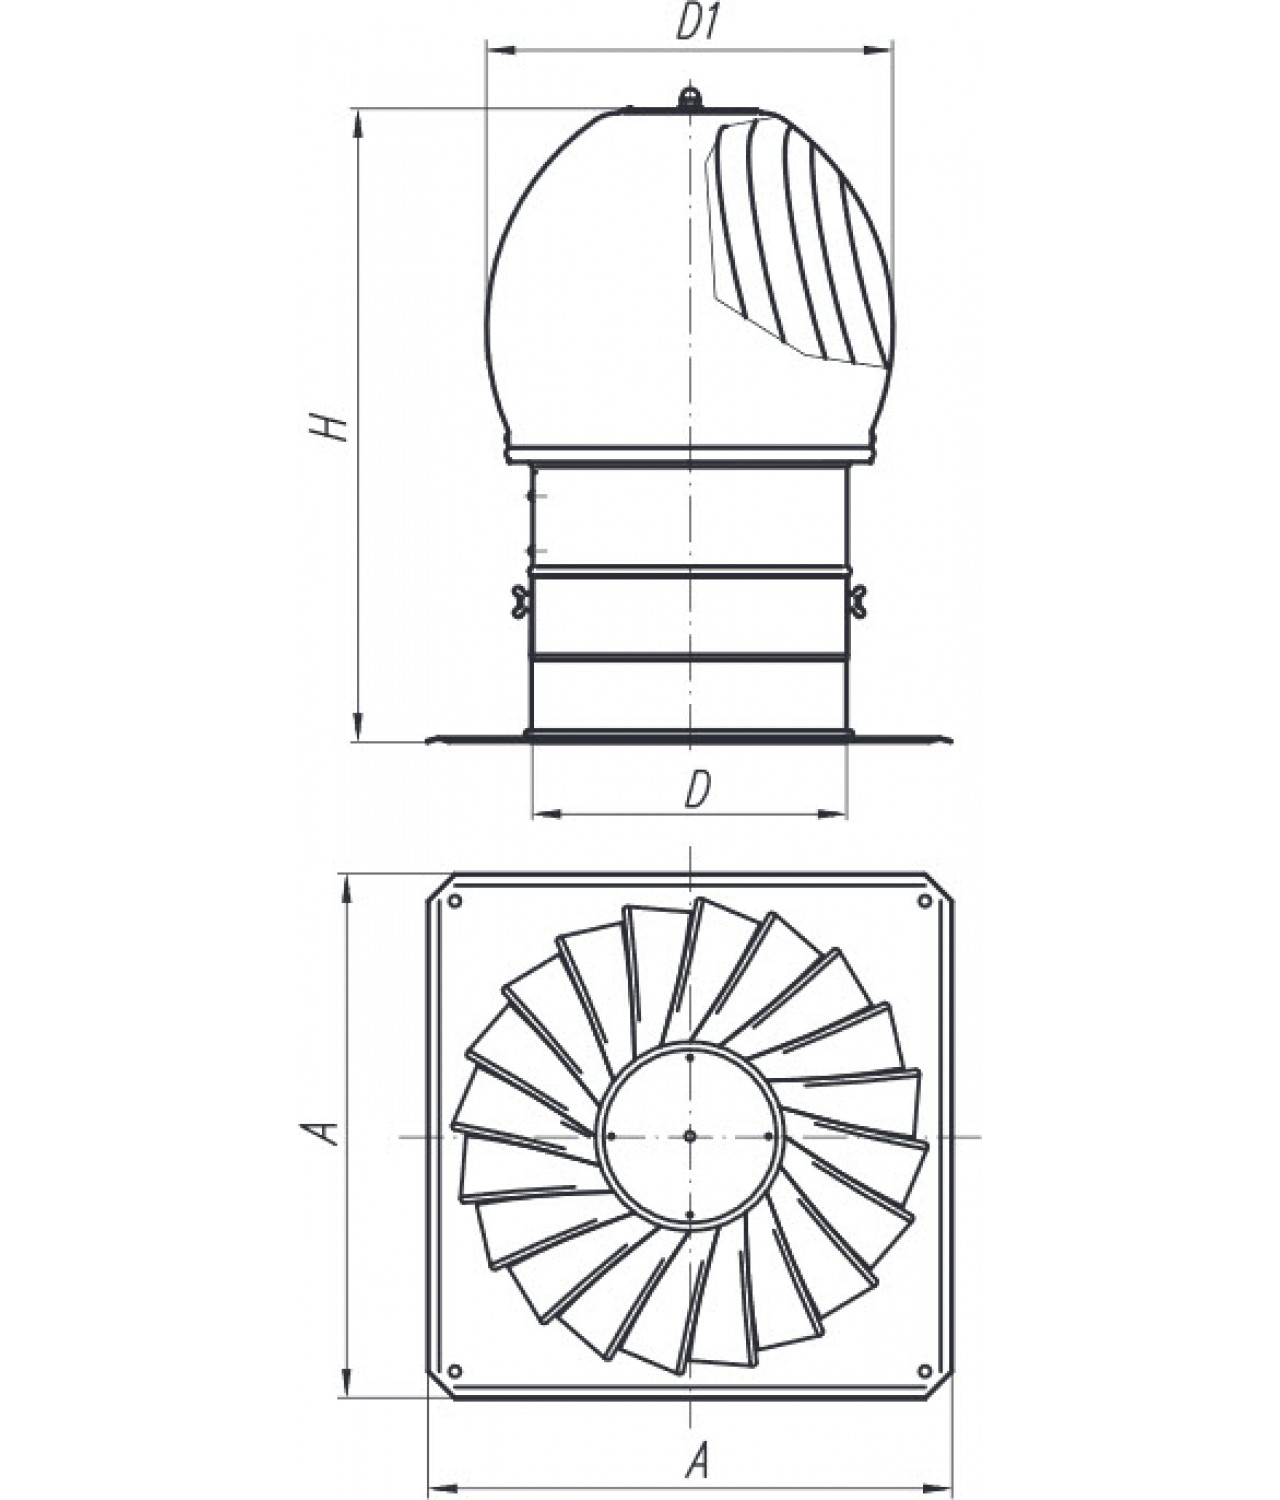 Дефлекторы вентиляционные TURBO-AL - чертеж